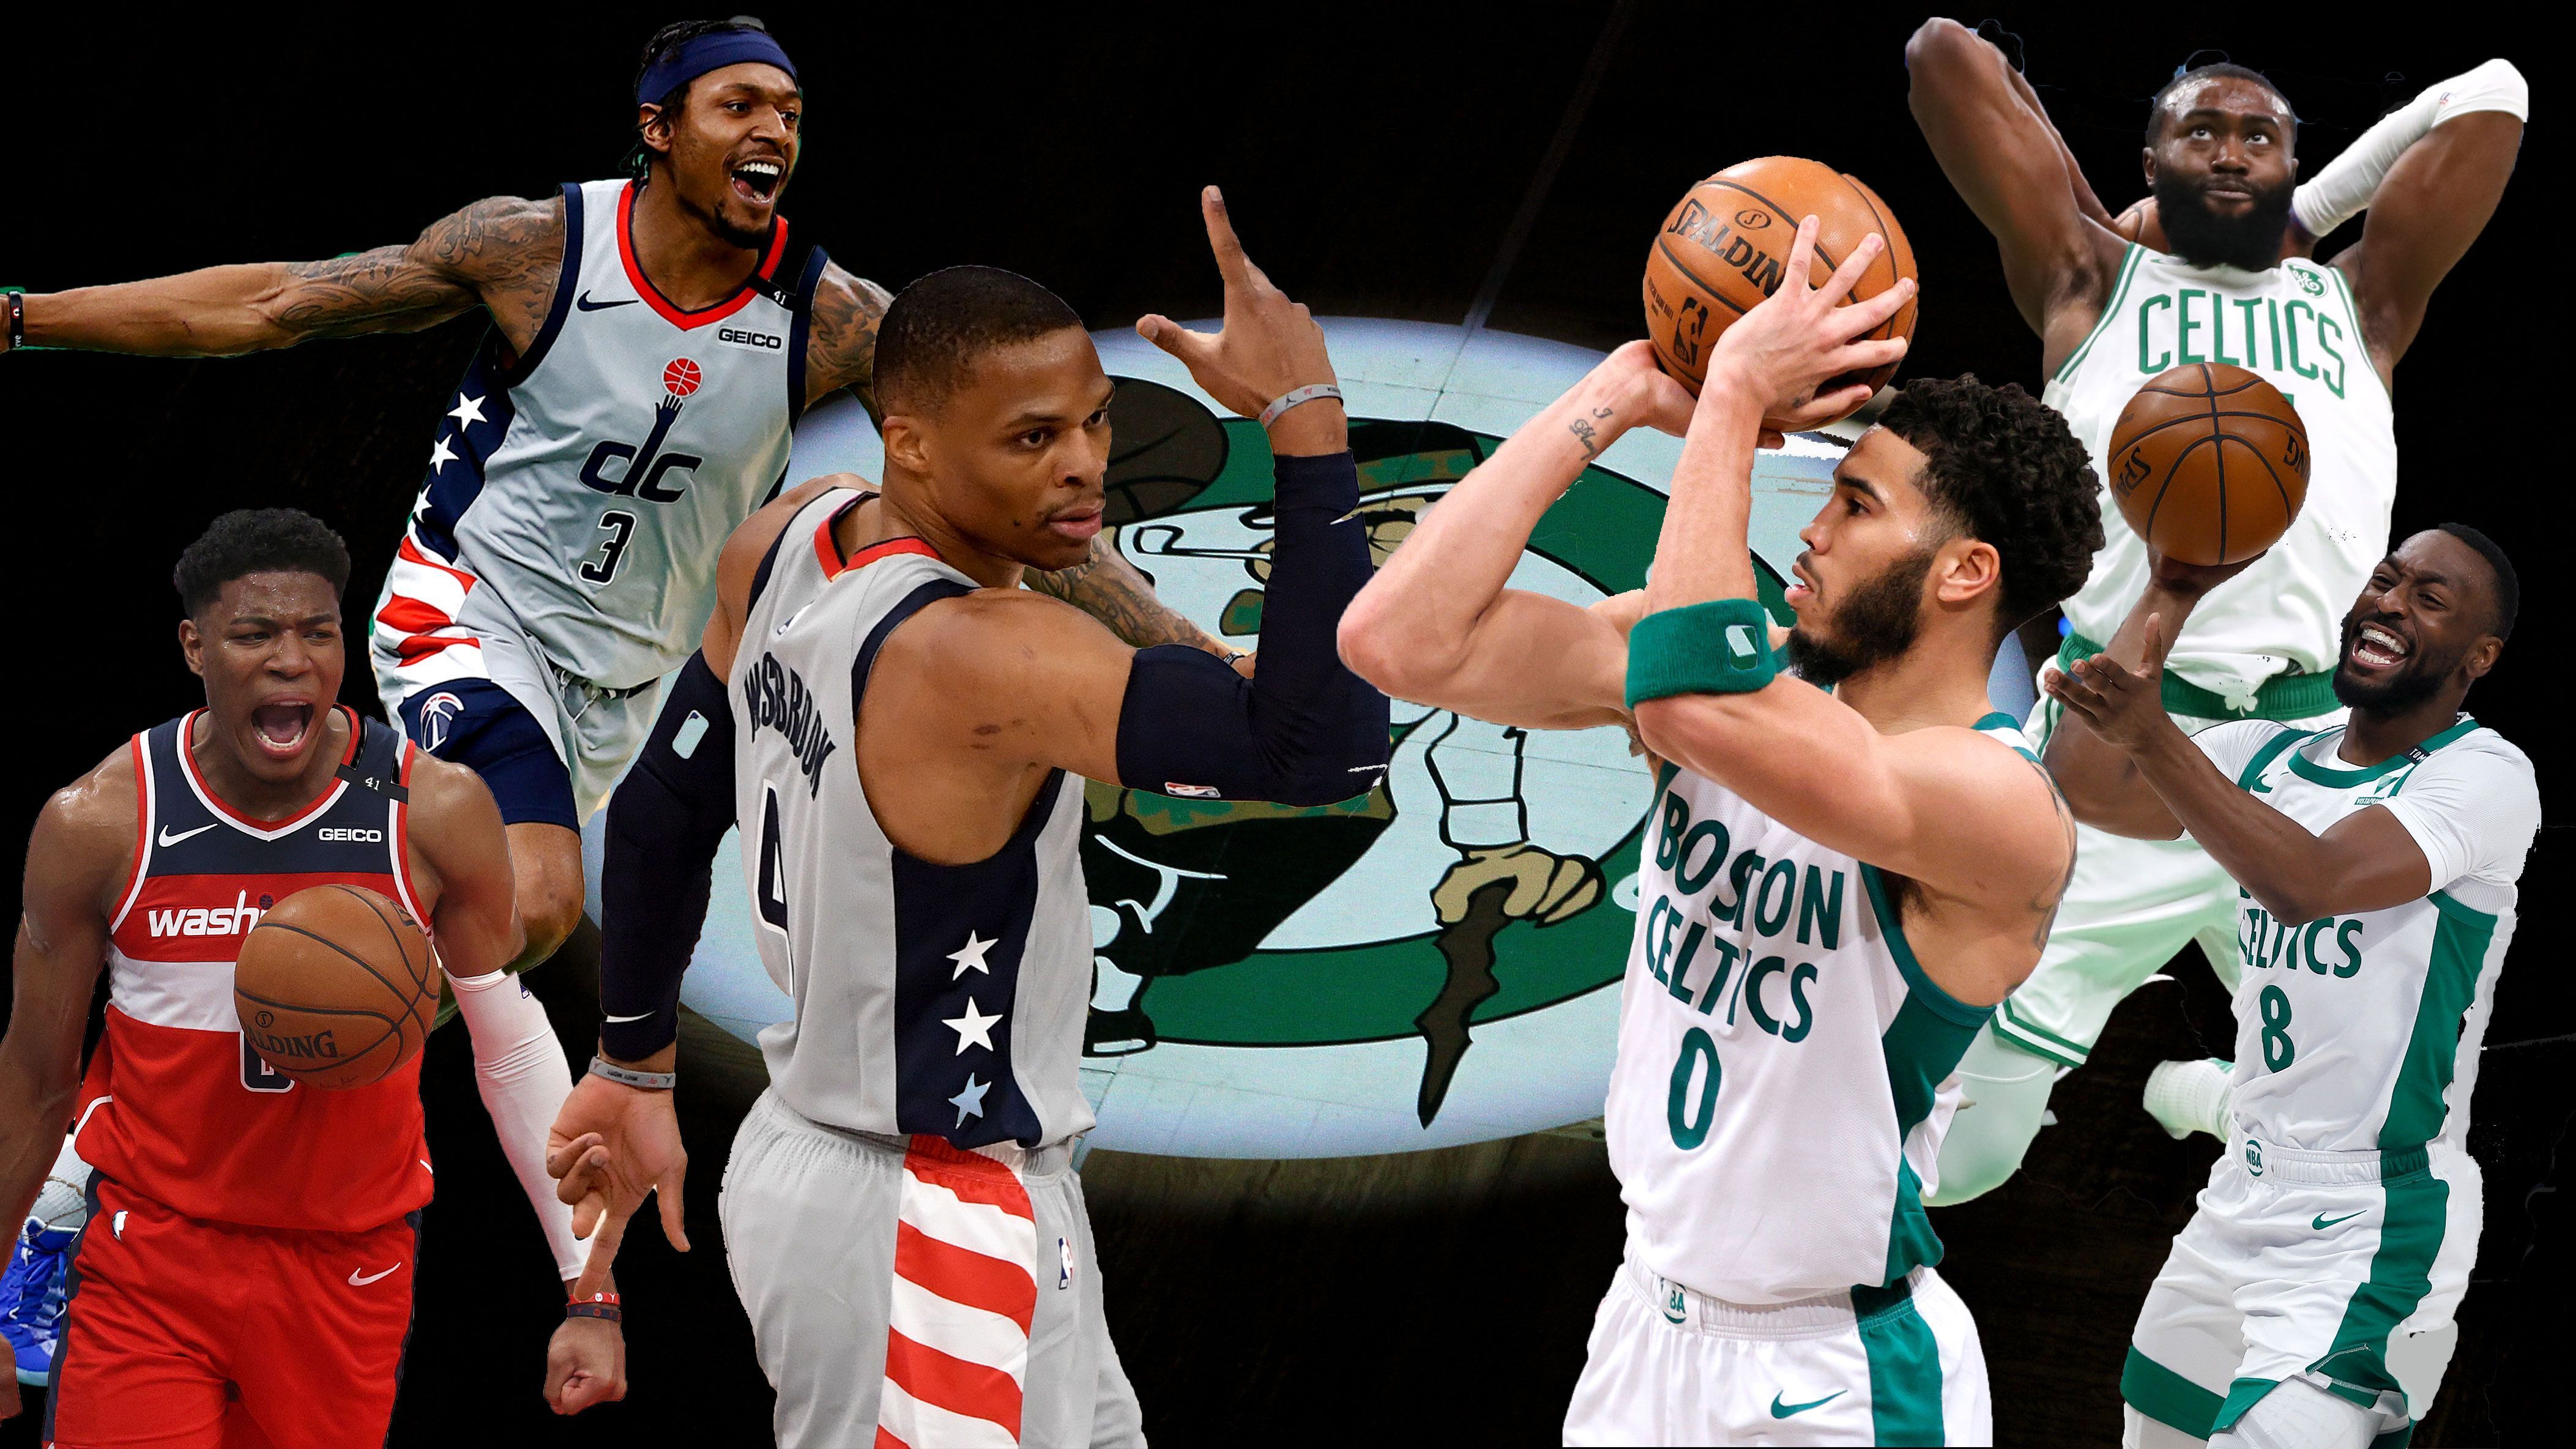 
                <strong>Washington Wizards at Boston Celtics</strong><br>
                Nachdem die Wizards um Triple-Double-Maschine Russell Westbrook (vorne, 2. v. l.) katastrophal in die Saison gestartet waren, haben sie sich in der zweiten Saisonhälfte wieder gefangen. Mit Westbrooks Spielmacher-Qualitäten und Bradley Beals (vorne links) Scoring Power hat Washington zu seinem Spiel gefunden und hält mit Platz acht alle Playoff-Hoffnungen am Leben. Im Duell mit den Boston Celtics, die in dieser Saison ihren Erwartungen hinterher hinken, dürfte es dennoch kein Spaziergang werden. Mit All-Star Jayson Tatum (vorne, 2. v. r.) und einem jungen, dynamischen Team sind die Celtics immer eine Waffe. Neben dem Scorer-Matchup zwischen Beal und Taytum dürfen wir uns vor allem auch auf das Aufeinandertreffen zwischen Westbrook und Marcus Smart freuen, die beide mit ihrer Mentalität für viel Zündstoff sorgen sollten.
              